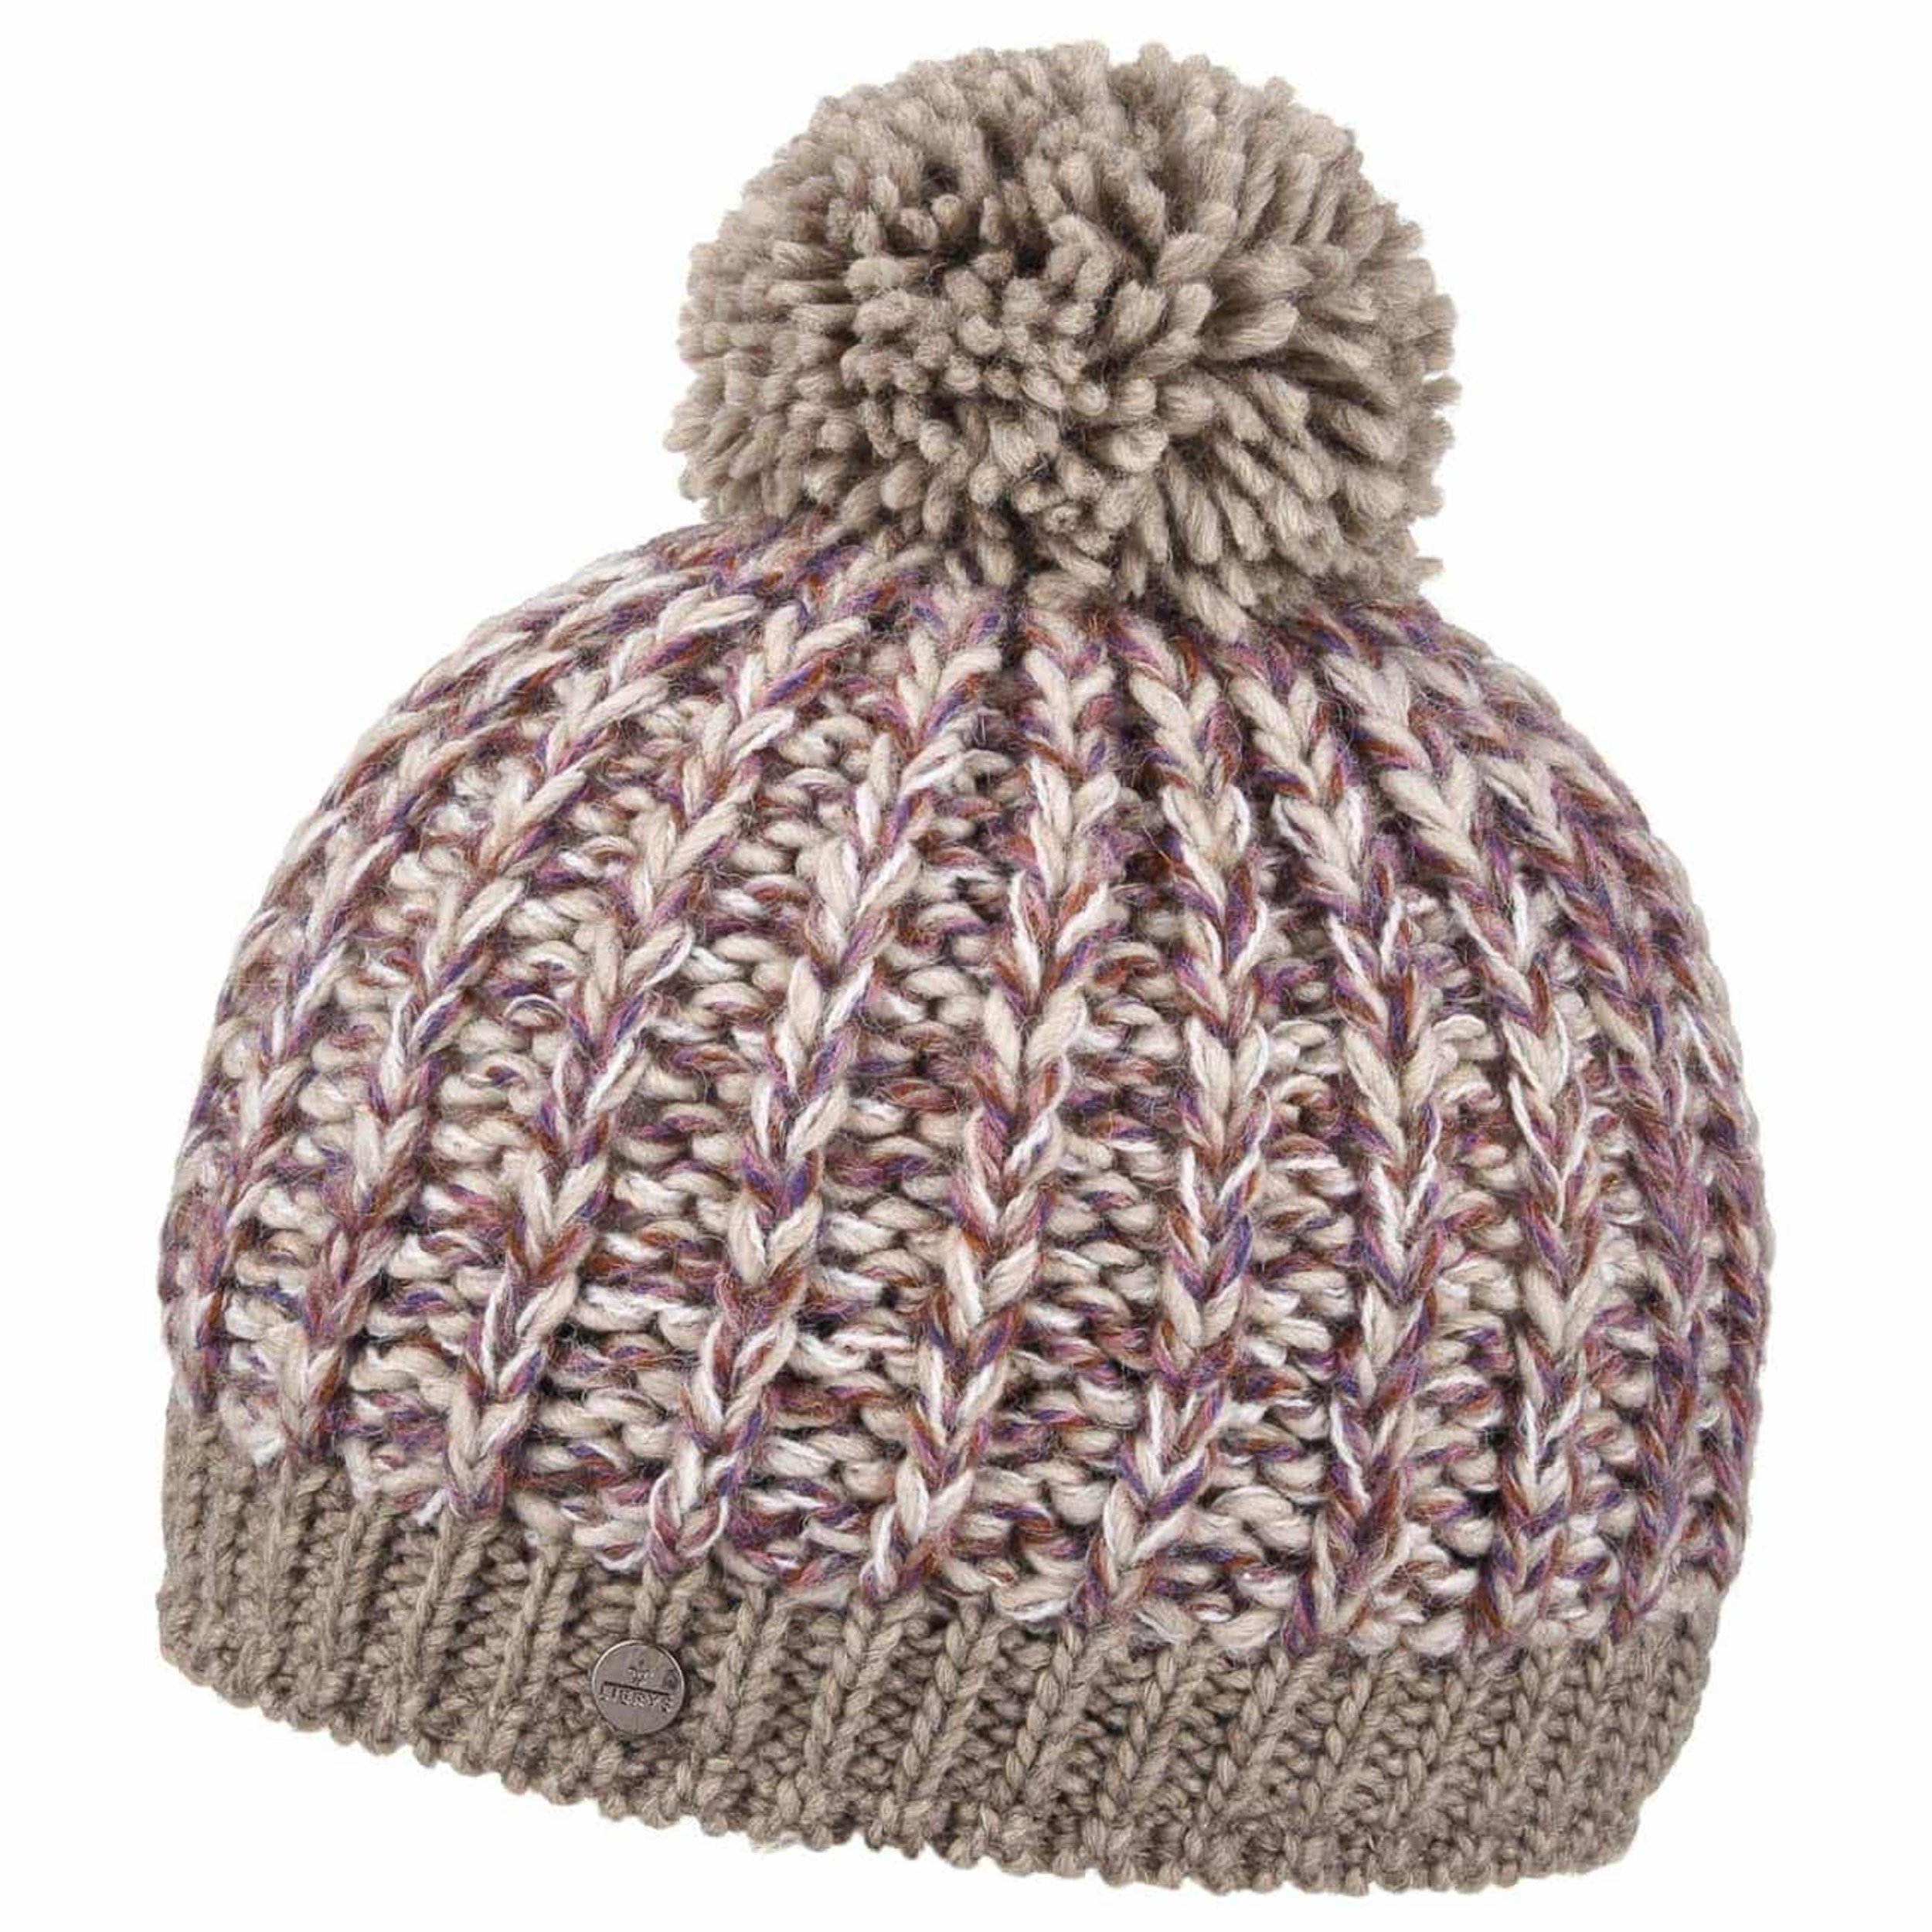 pompom knit hat